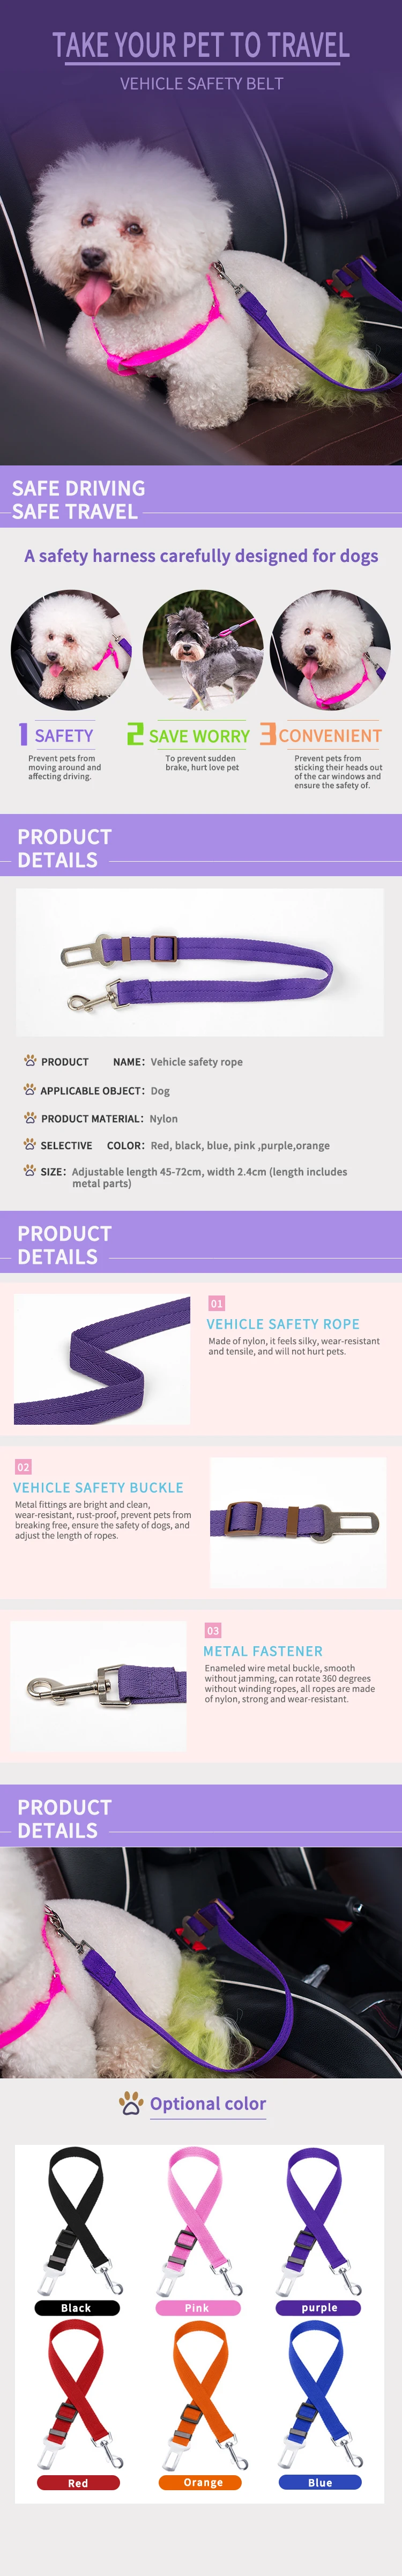 Dadugo Регулируемый автомобильный ремень безопасности для собак и кошек безопасные поводки ремни безопасности для автомобиля 5 цветов Прямая поставка